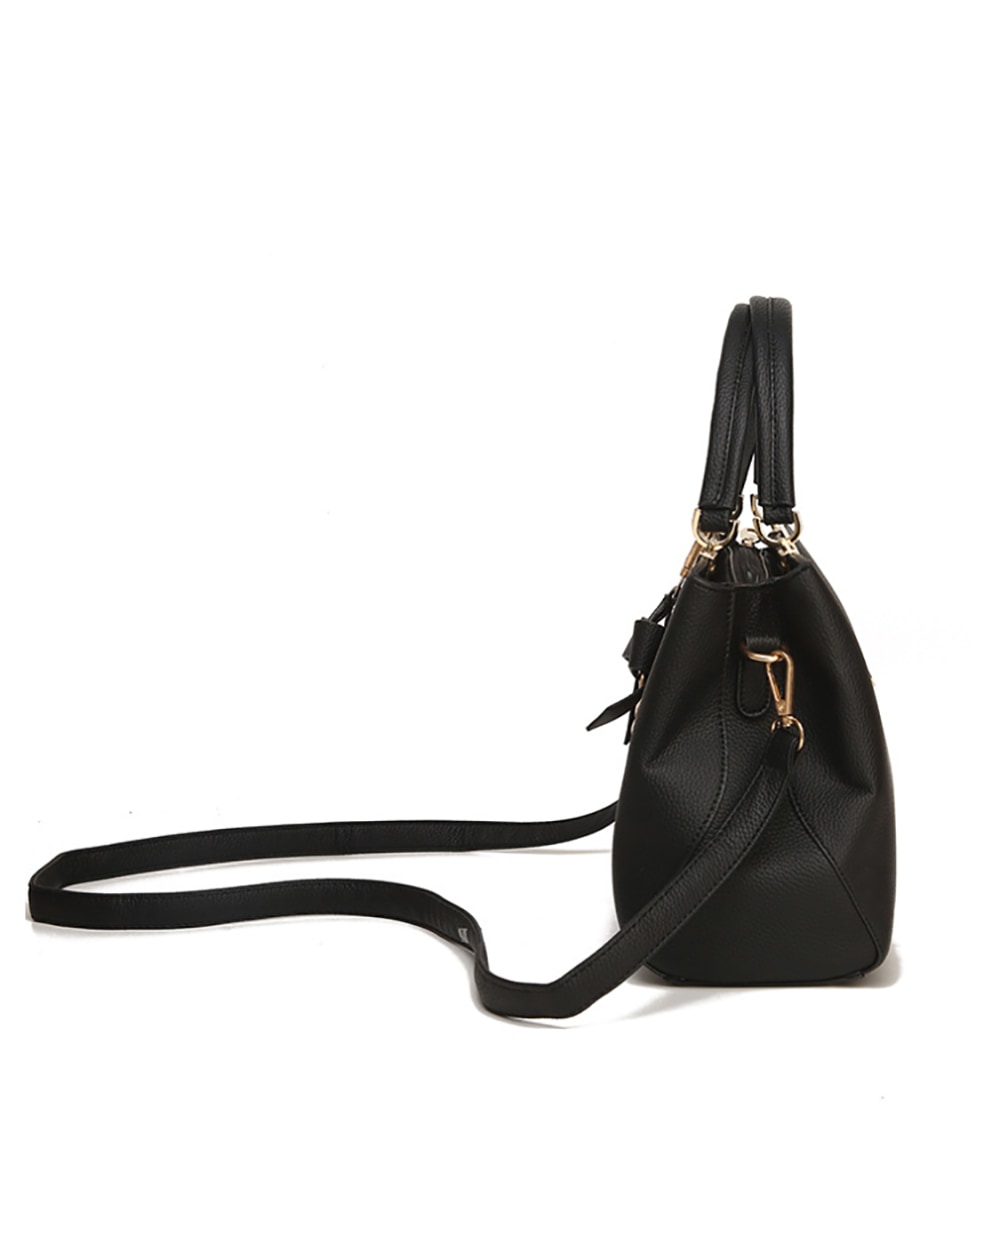 elegant tassel ladies handbag black - 4